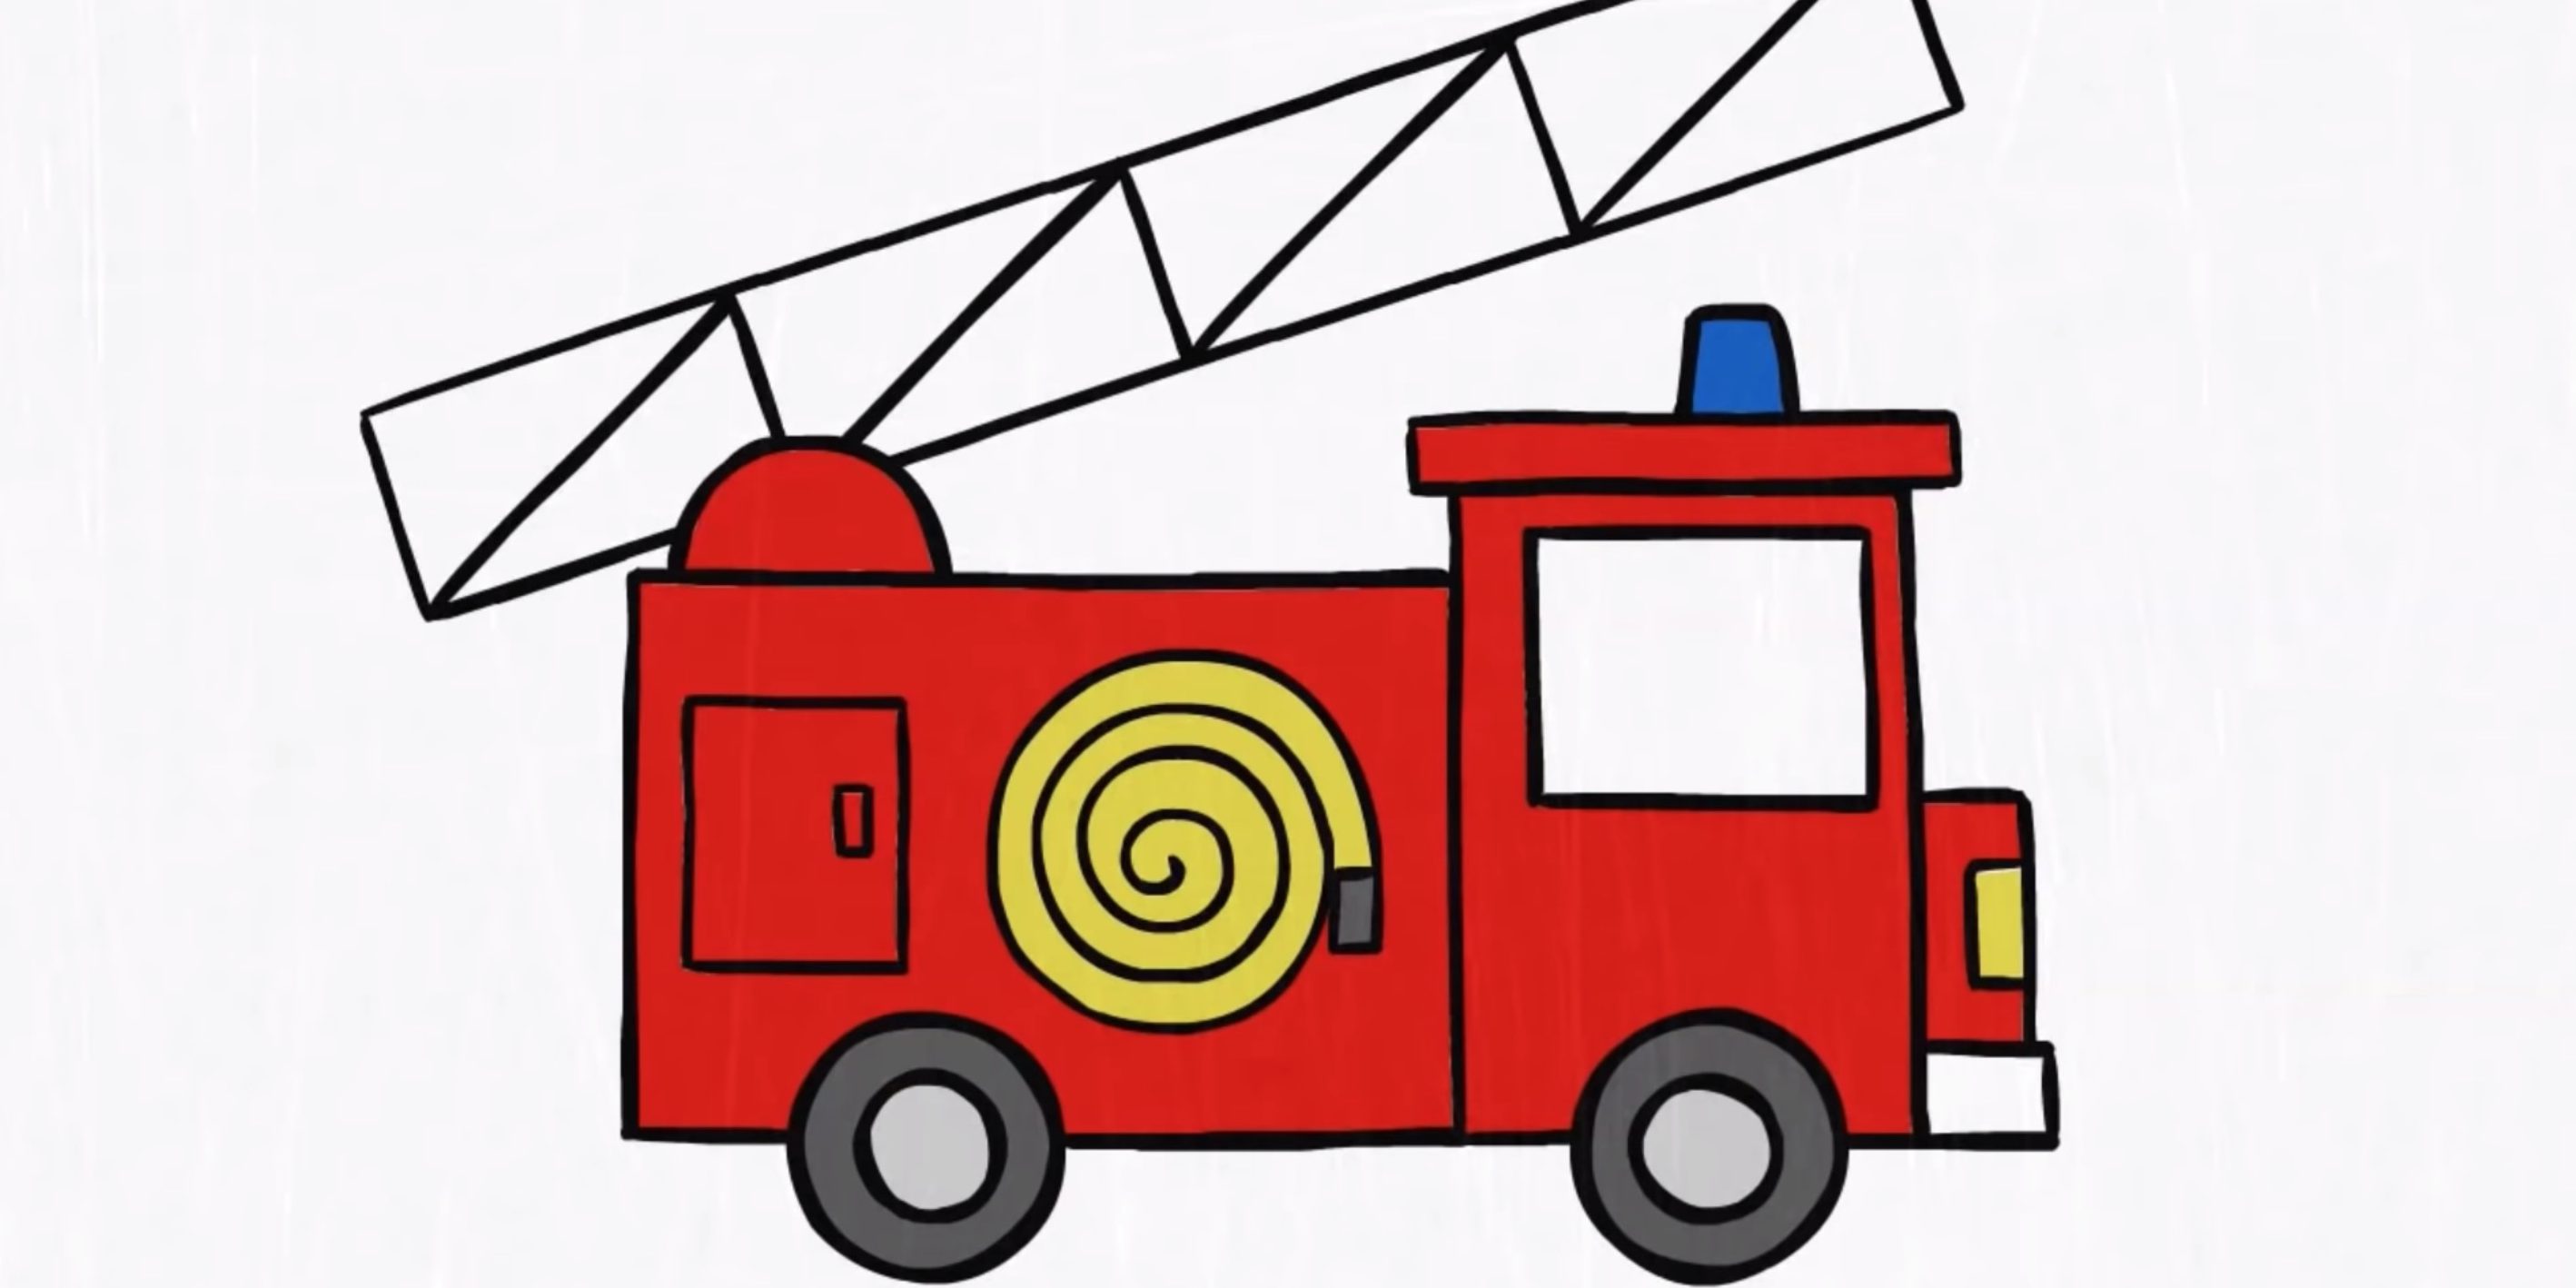 Легок пожарная машина. Кануки Капуки пожарная машина. Капуки Кануки пожарная машина рисовашка. Пожарная машина рисунок. Рисование для детей пожарная машина.